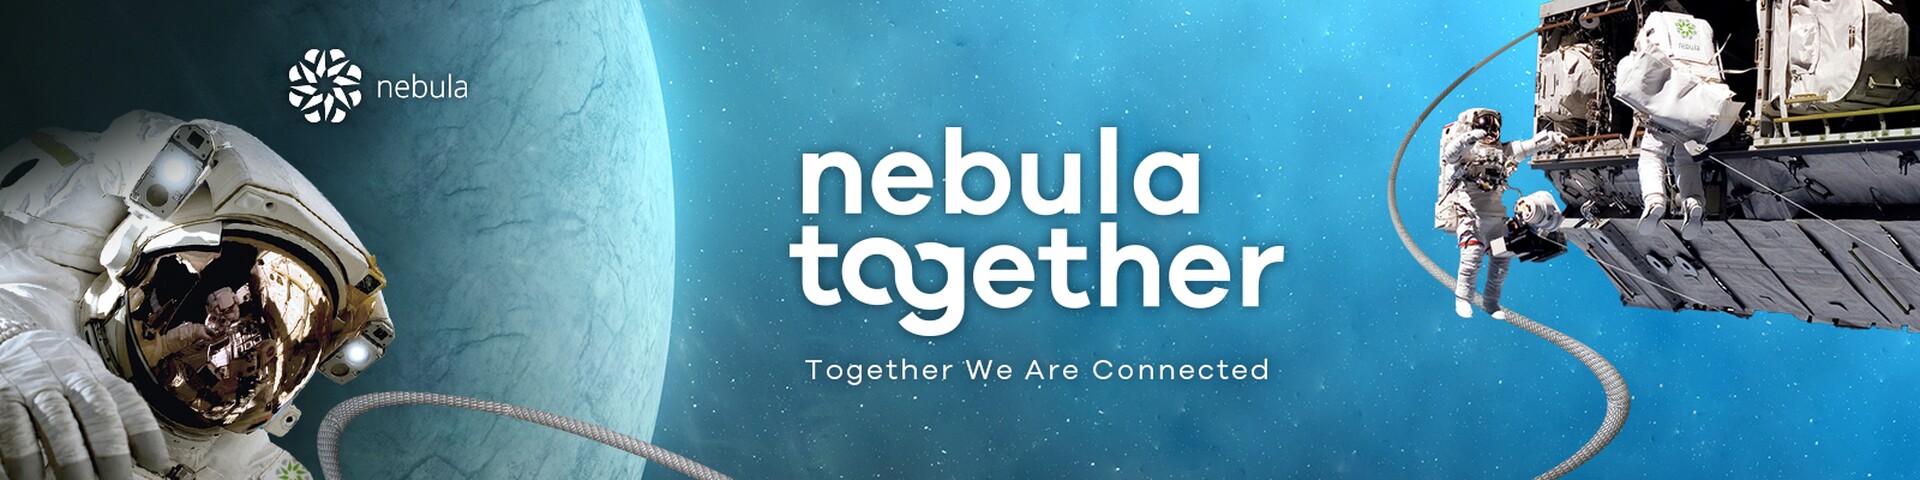 Zyxel Nebula, şimdi dijital varlıklar için daha da gelişmiş koruma sunuyor